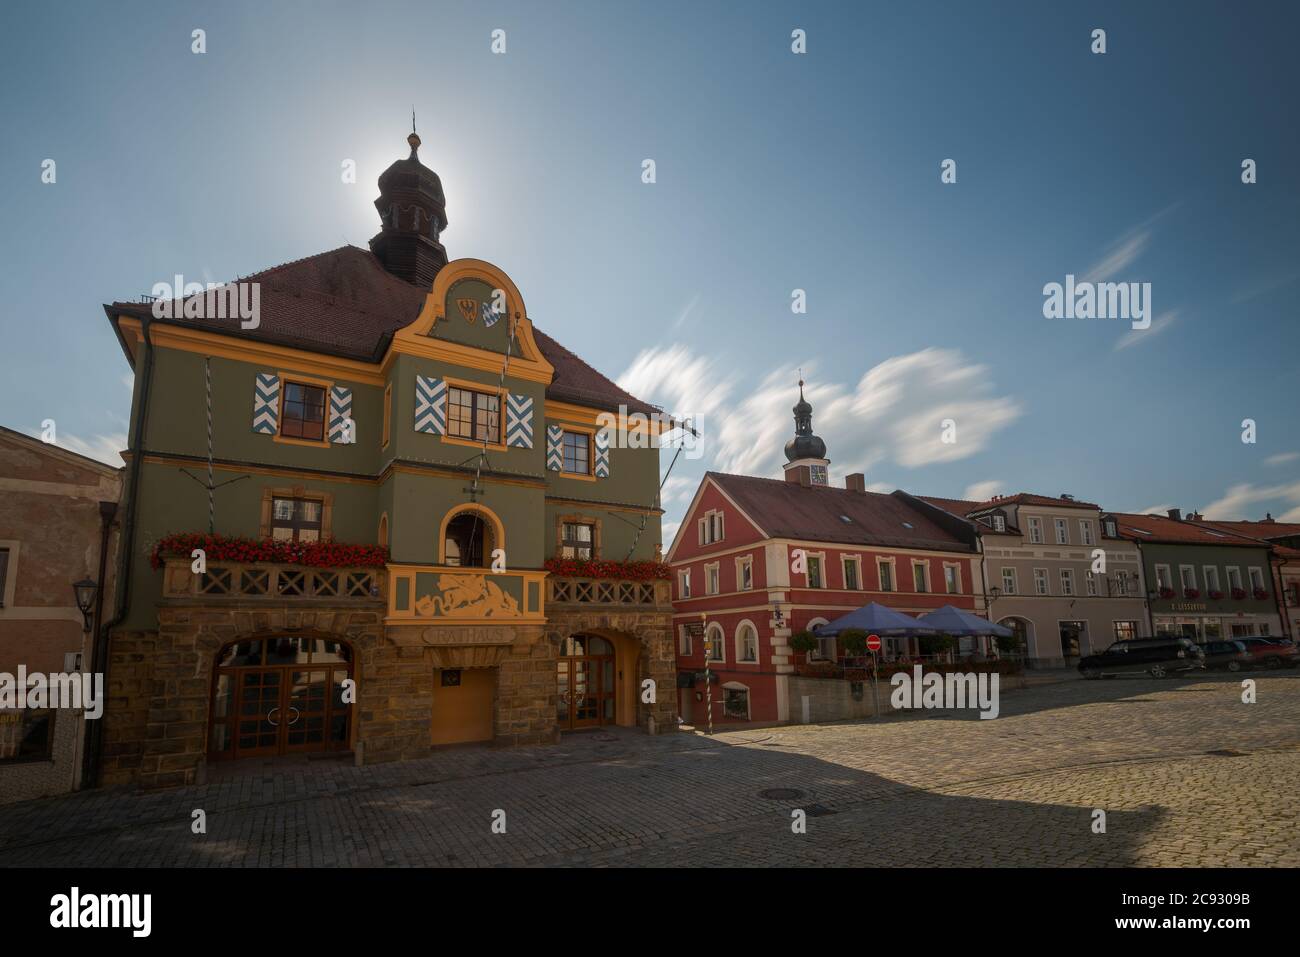 Rathaus, Stadtturm, Amtsgericht und Glockenspiel auf dem Stadtplatz in Furth im Wald Stock Photo